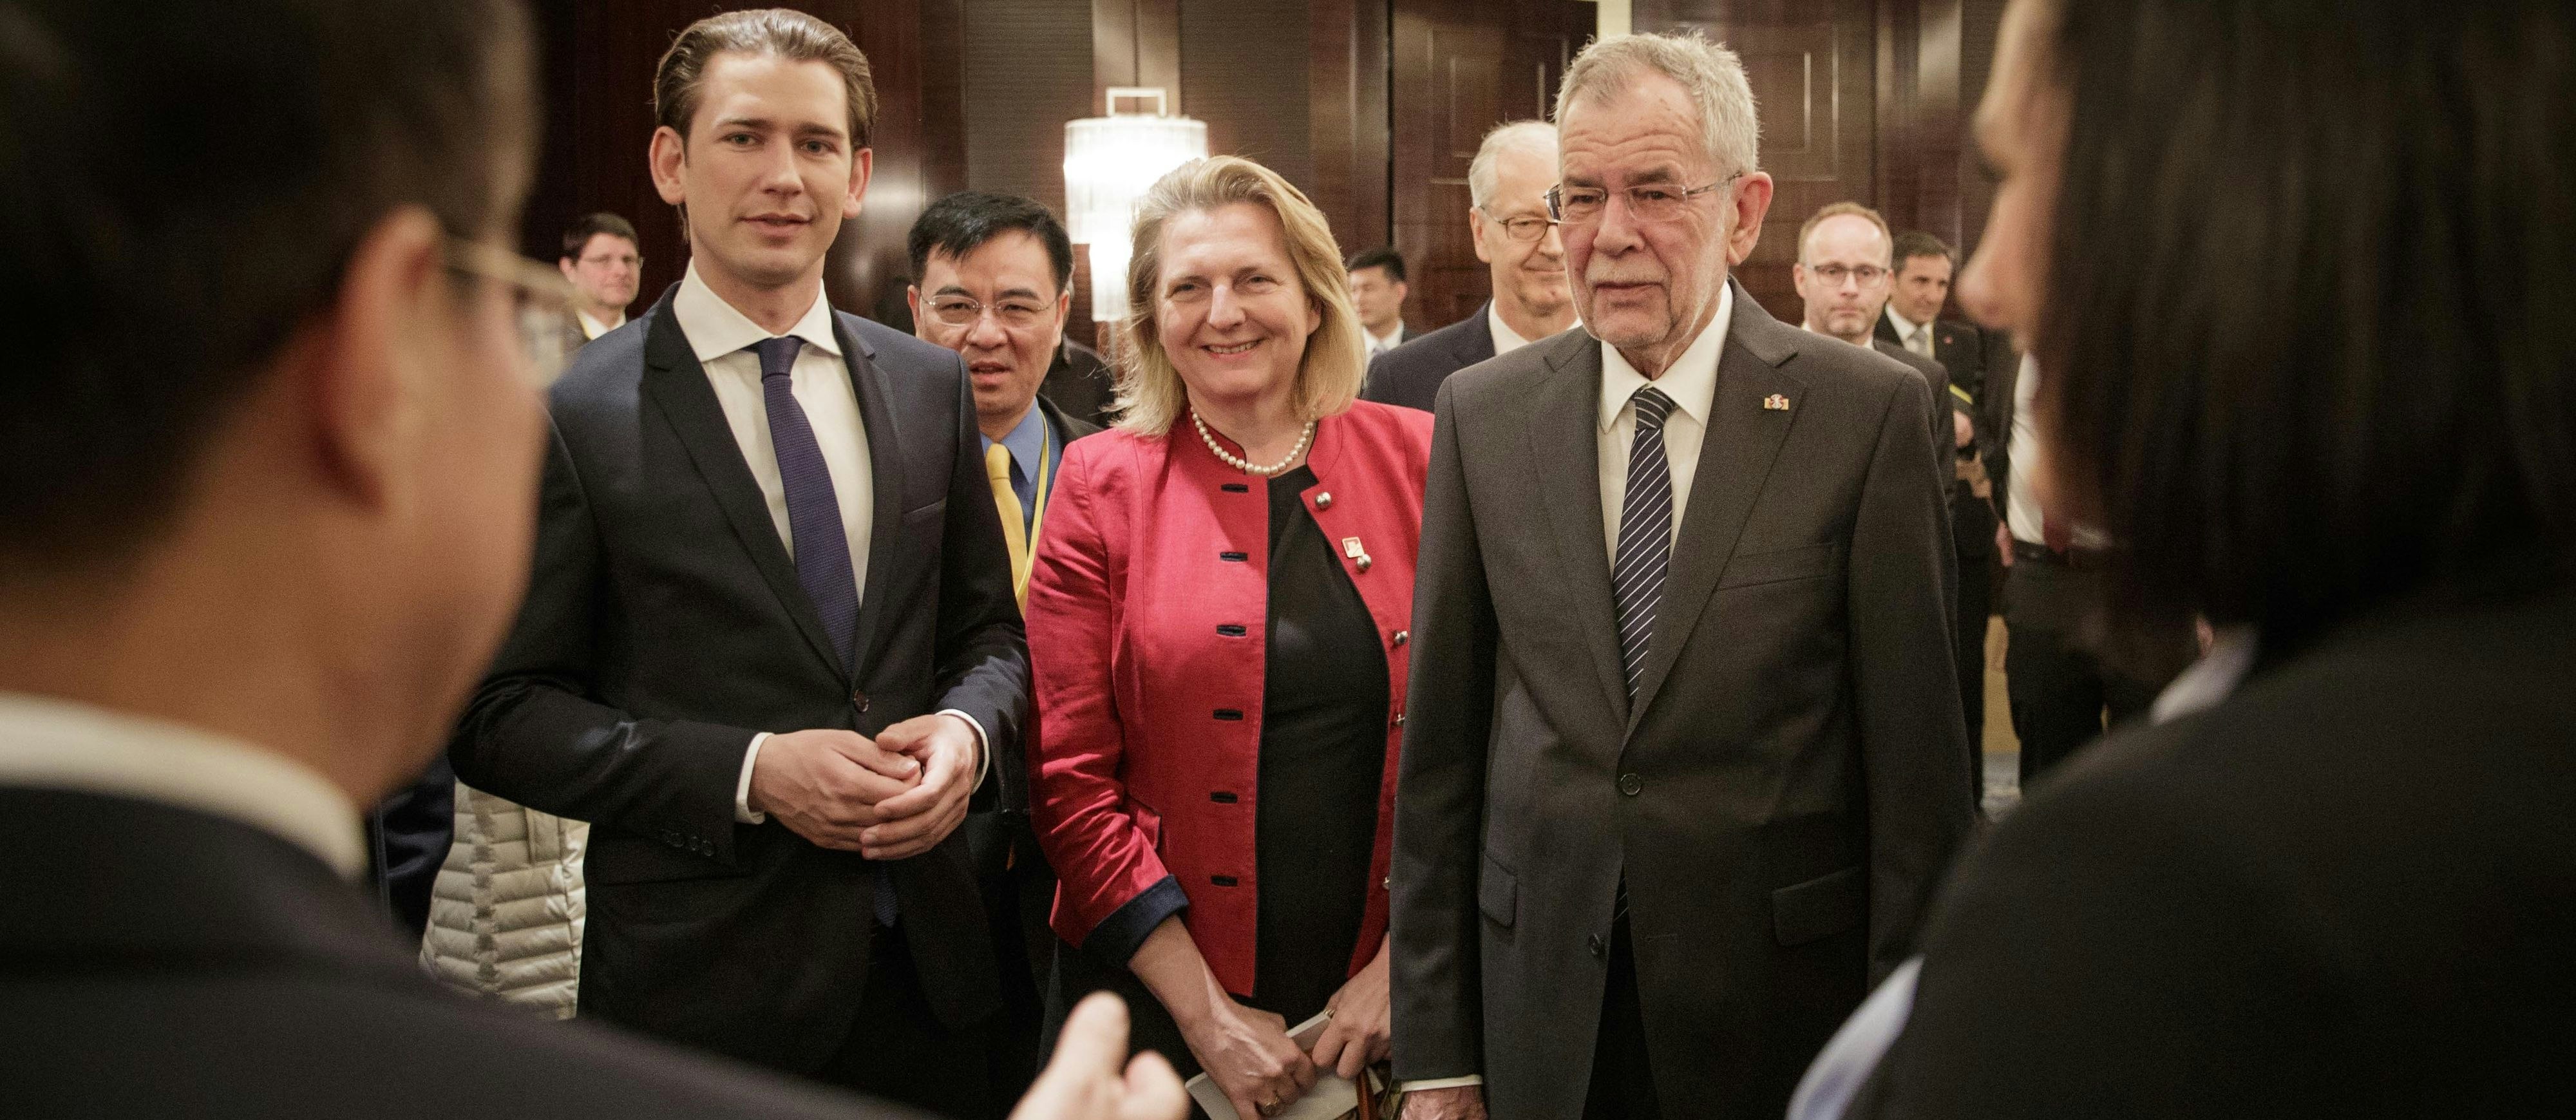 Bundespräsident Alexander Van der Bellen, Außenministerin Karin Kneissl und Bundeskanzler Sebastian Kurz (l.) während der Eröffnung der Wirtschaftskonferenz "Austria Connect China" am 8. April 2018 in Peking